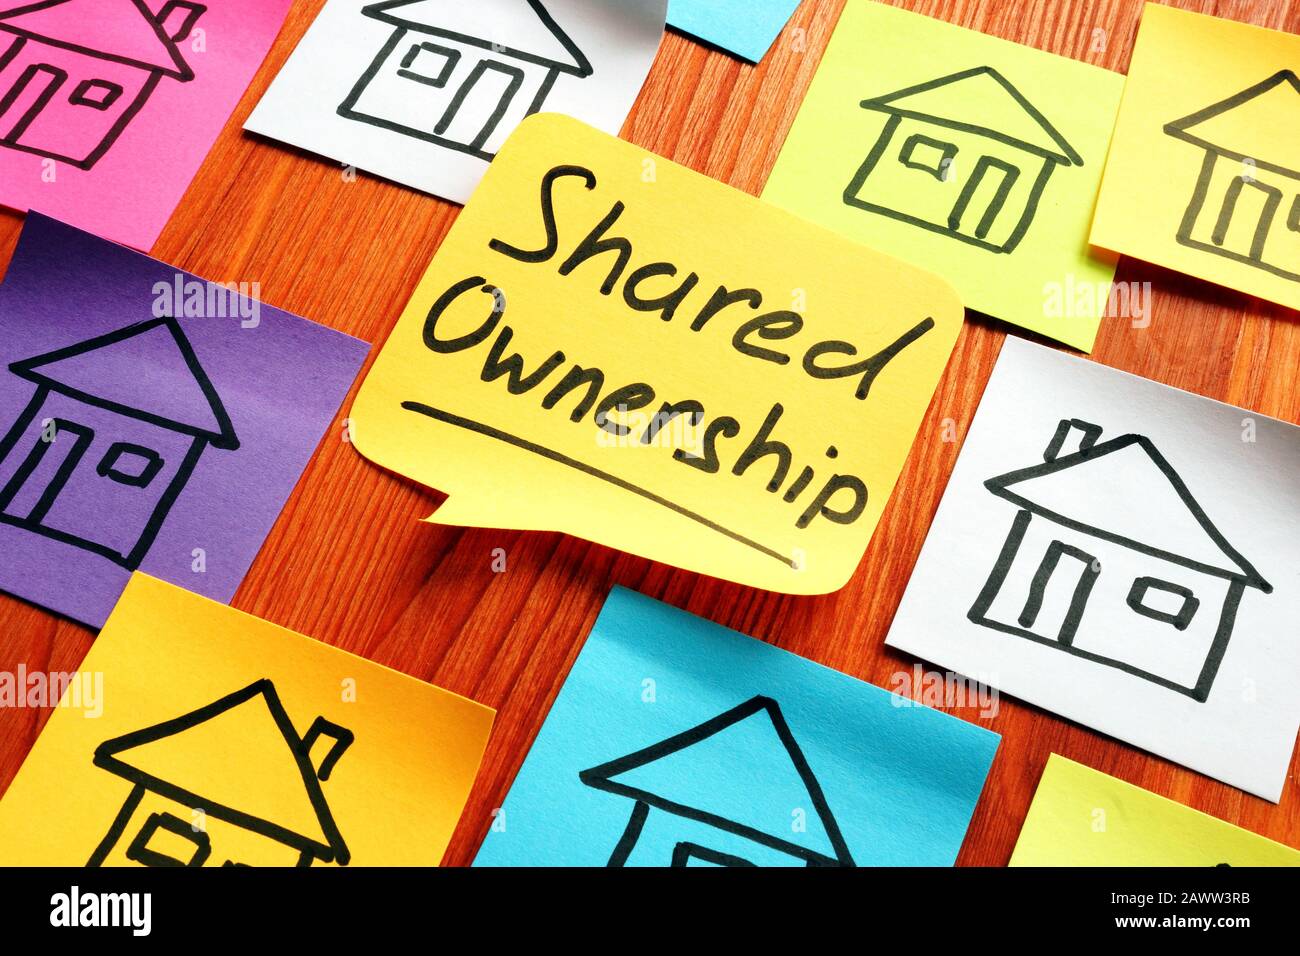 Gemeinsame Besitzerphrase und gezeichnete Häuser. Stockfoto